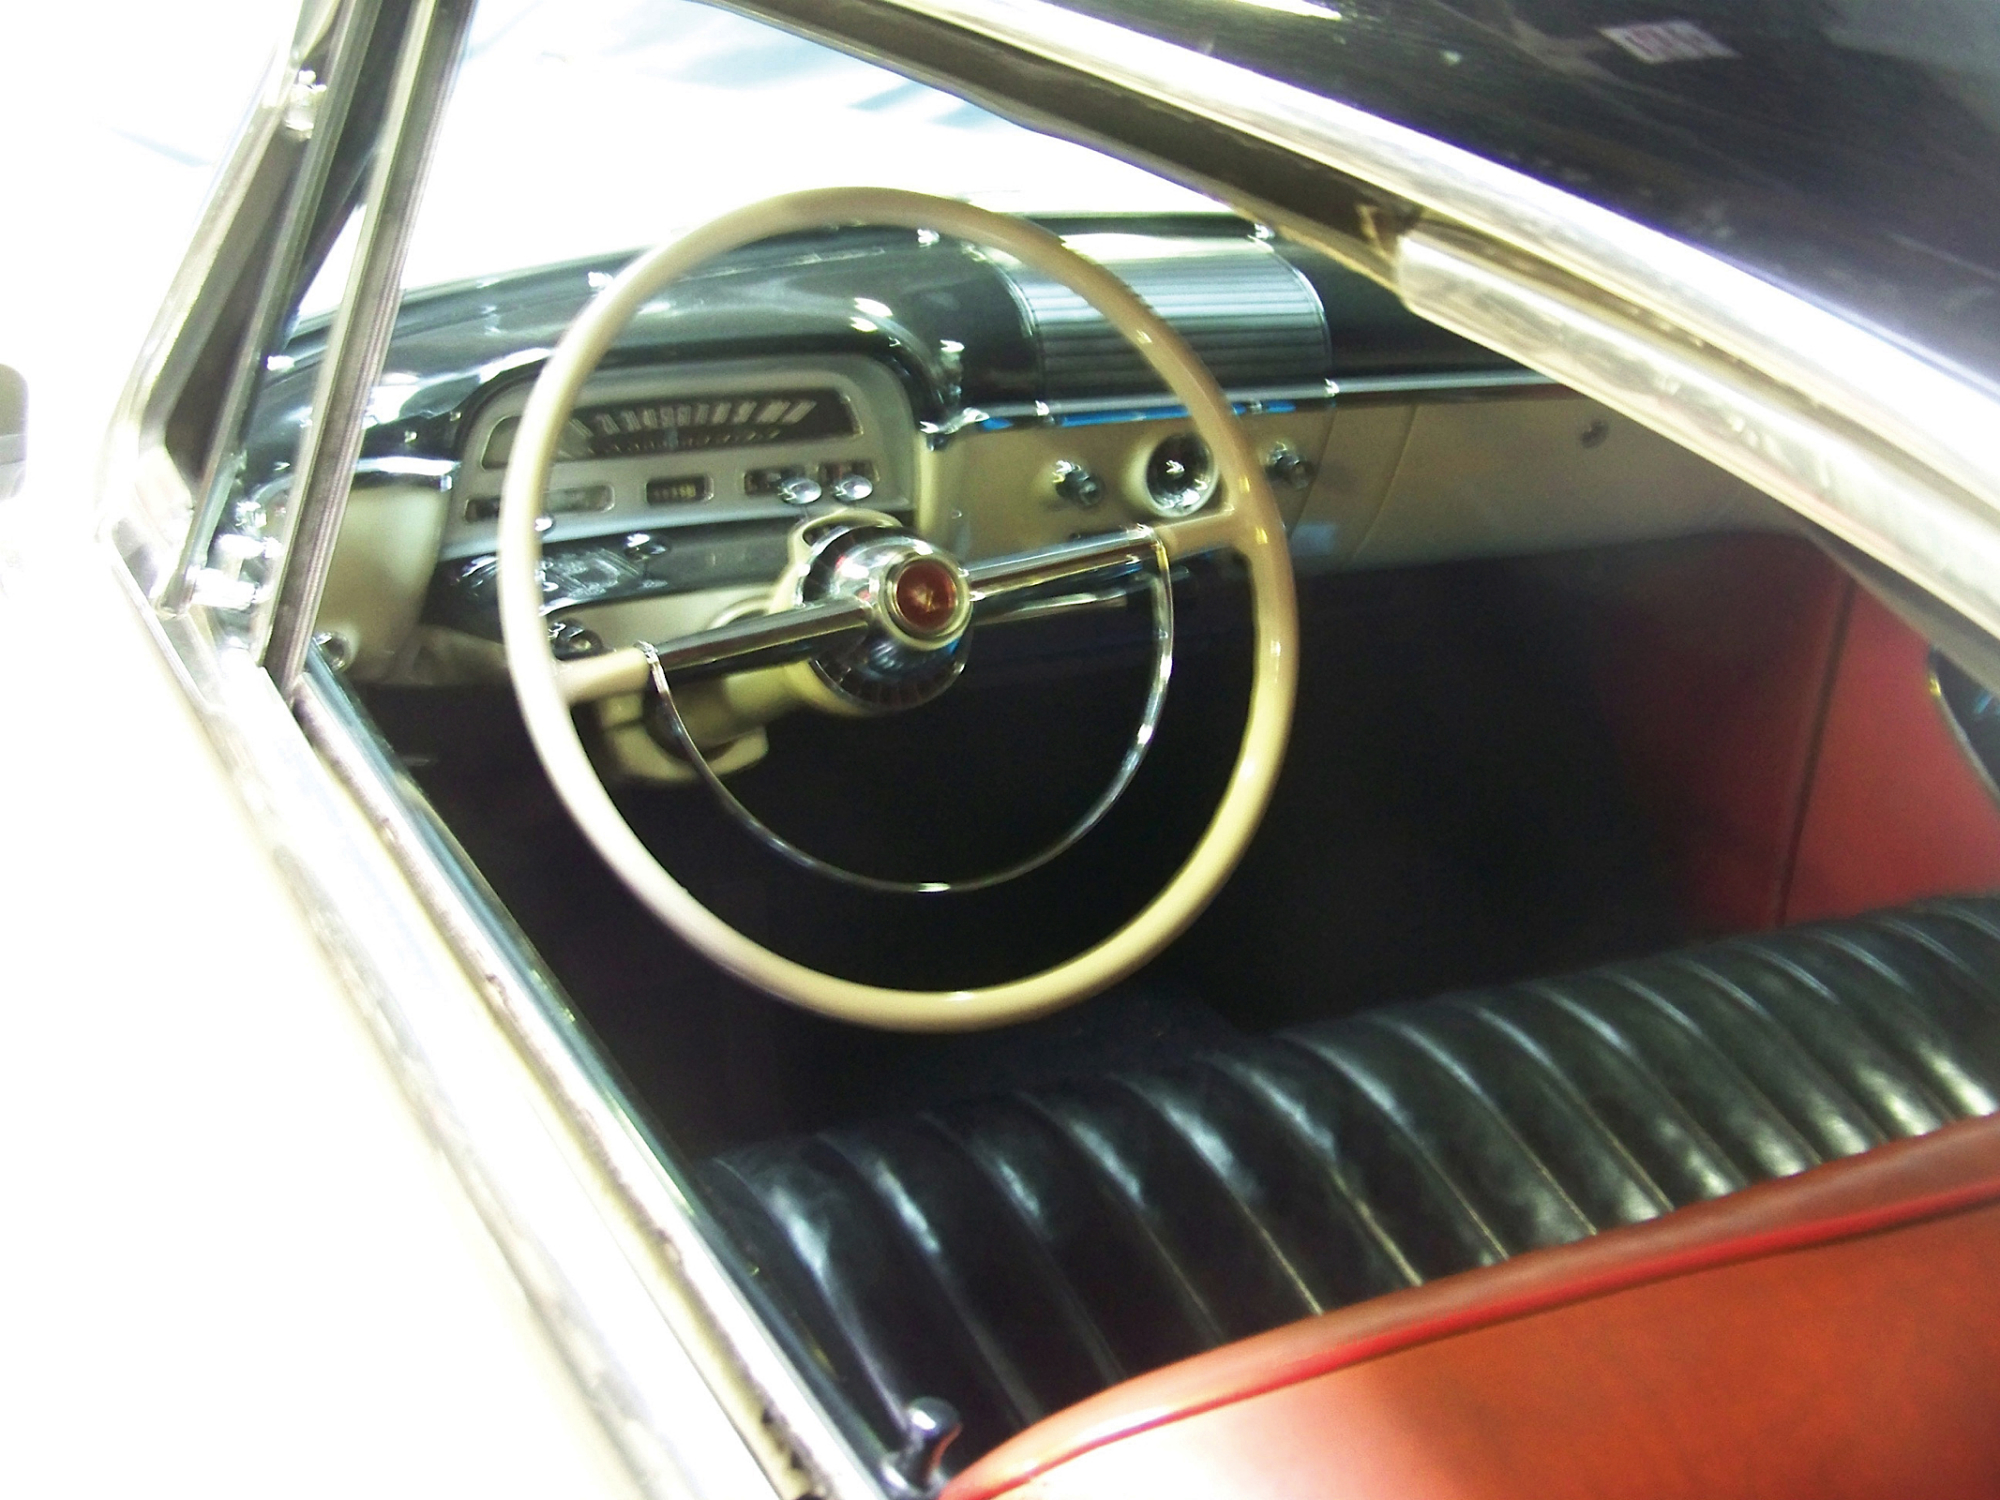 Mercury Monterey Hardtop Coupe